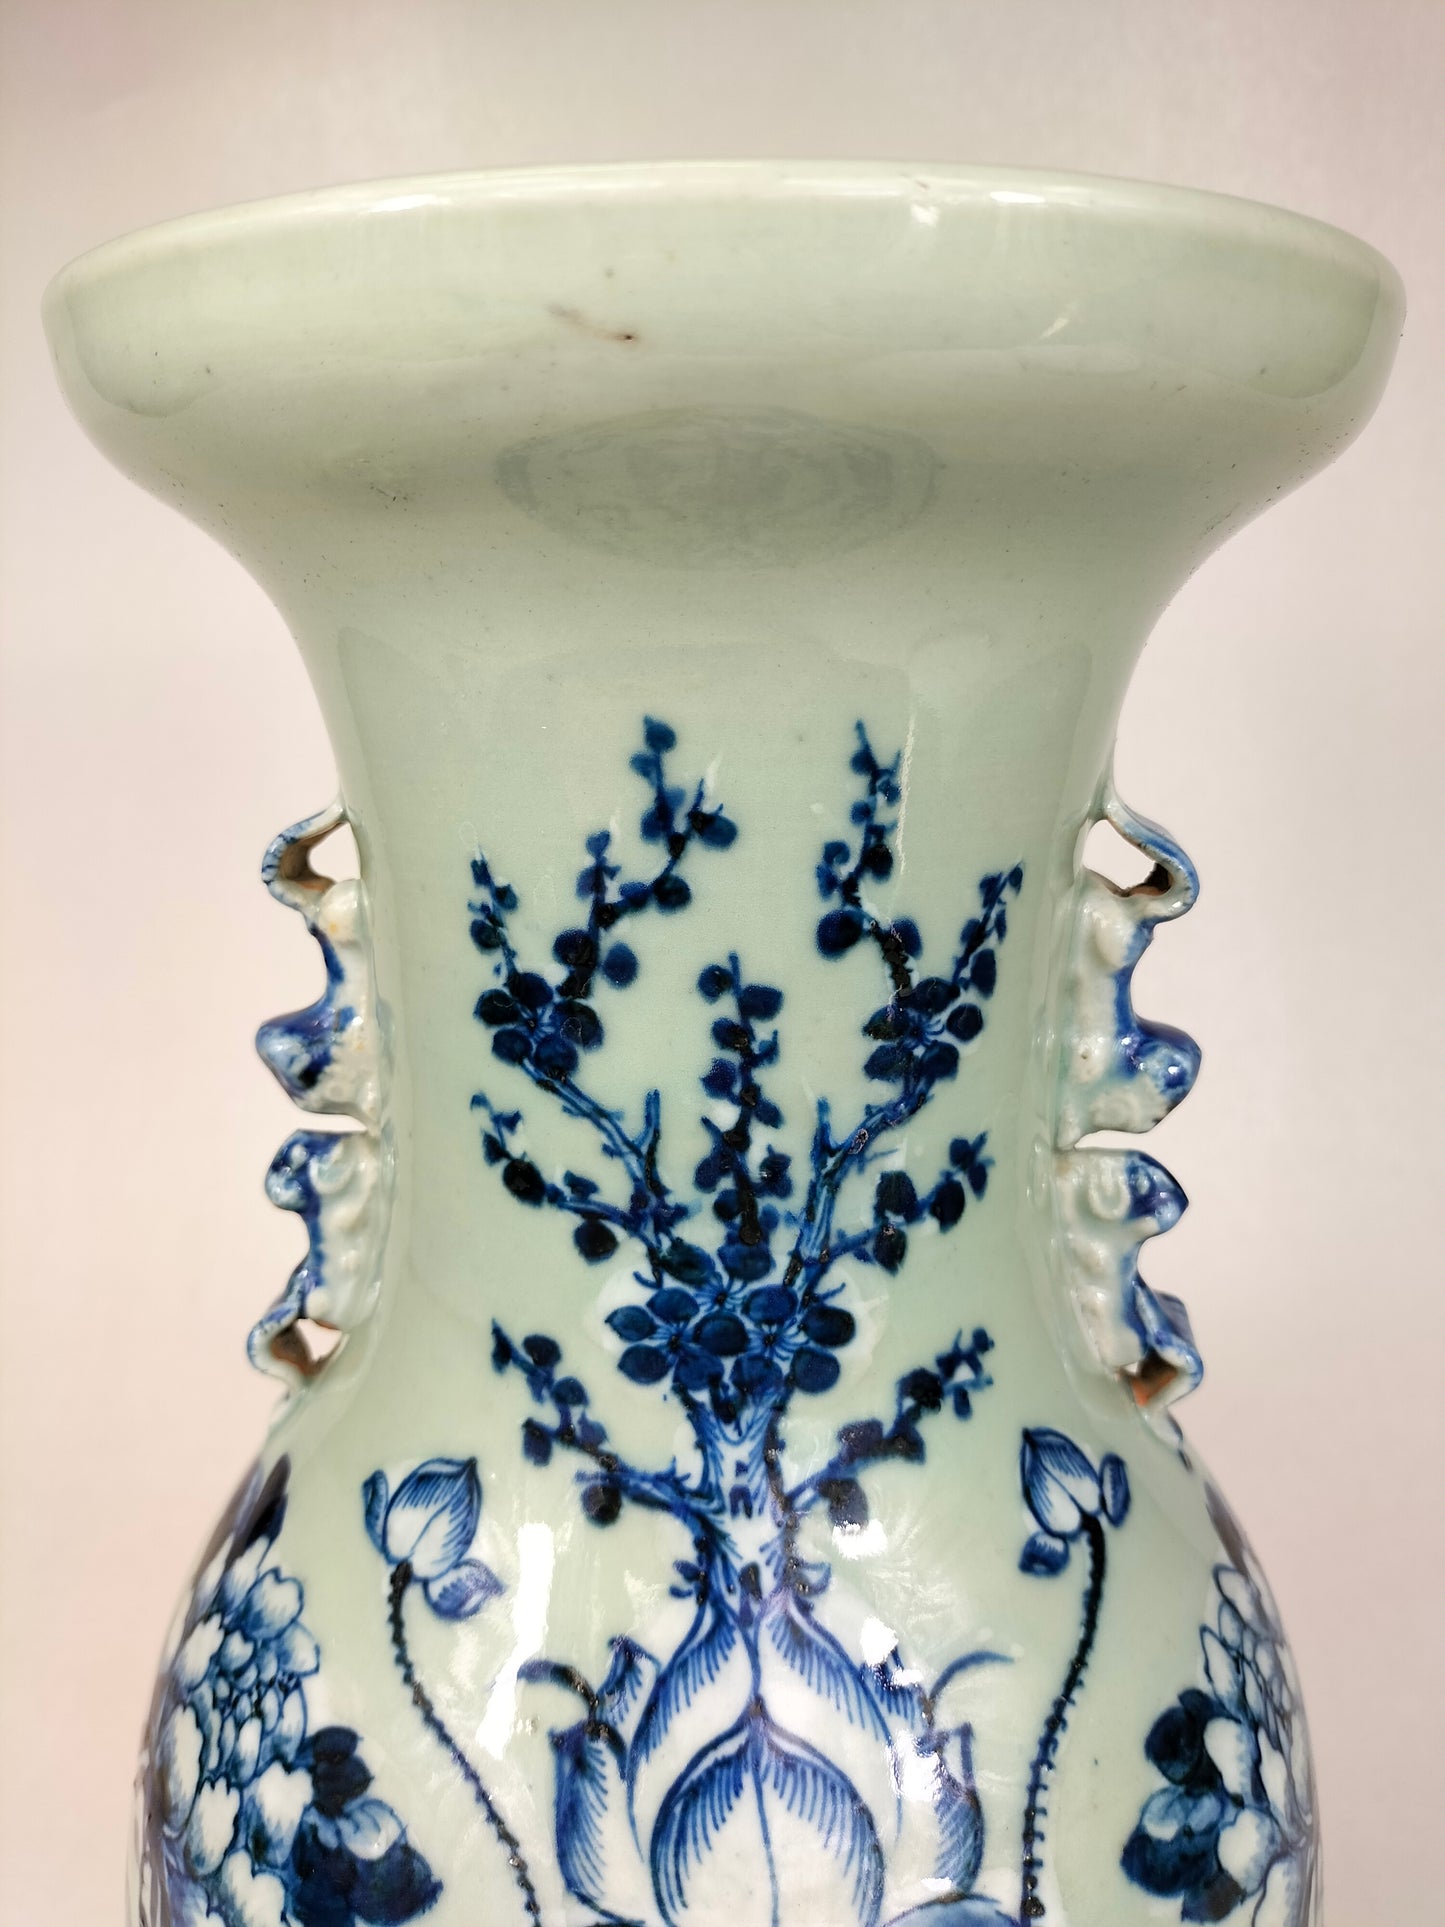 Antigo vaso chinês celadon decorado com lótus // Dinastia Qing - século XIX